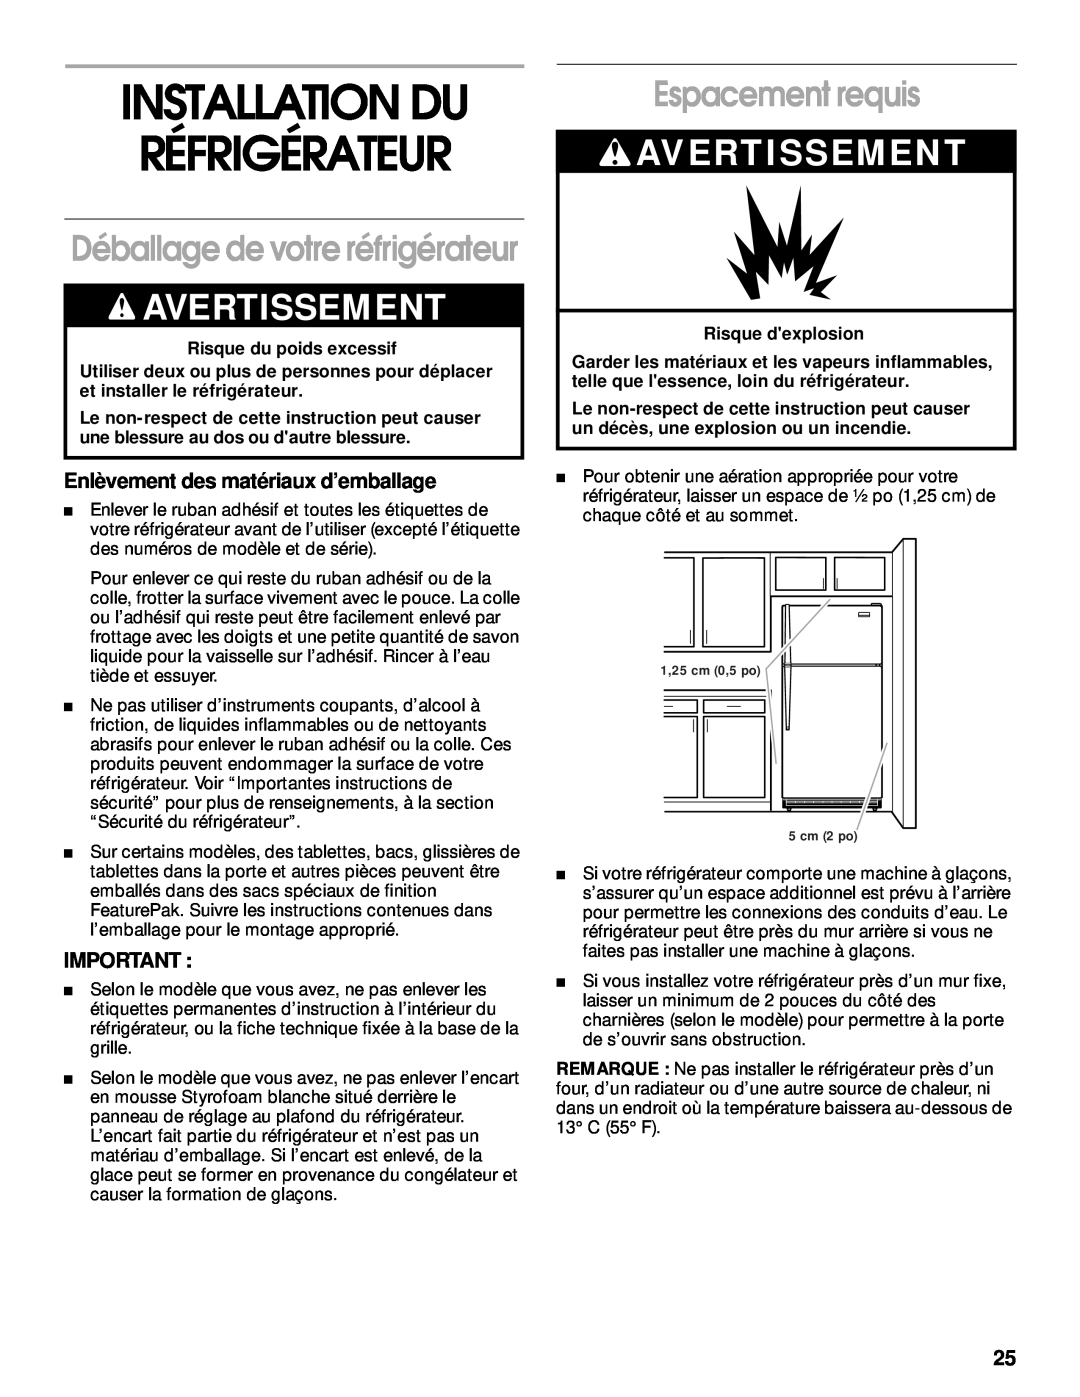 Whirlpool 2199011 manual Installation Du Réfrigérateur, Espacement requis, Déballage de votre réfrigérateur, Avertissement 